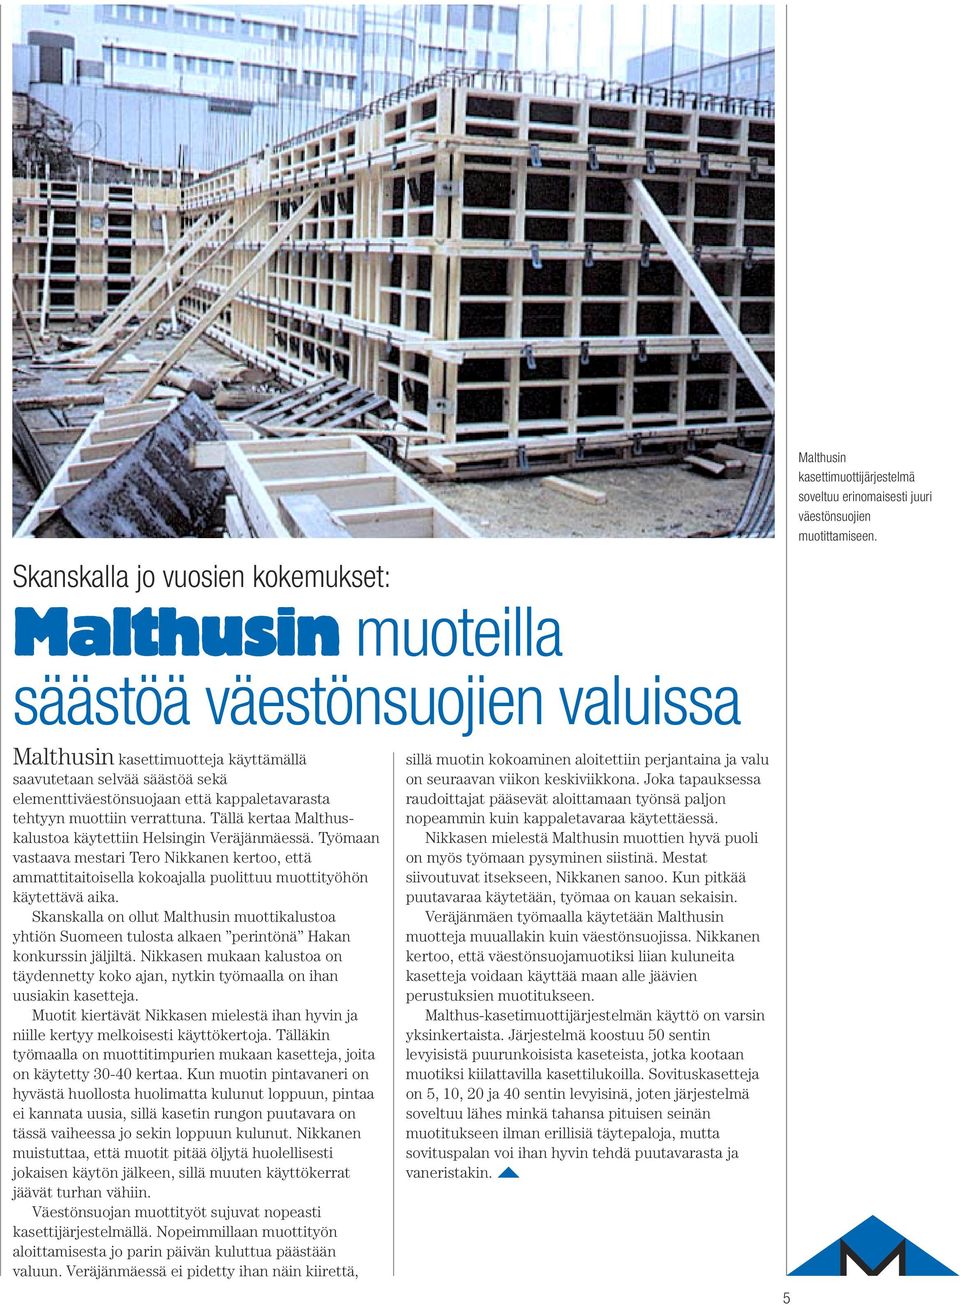 kappaletavarasta tehtyyn muottiin verrattuna. Tällä kertaa Malthuskalustoa käytettiin Helsingin Veräjänmäessä.